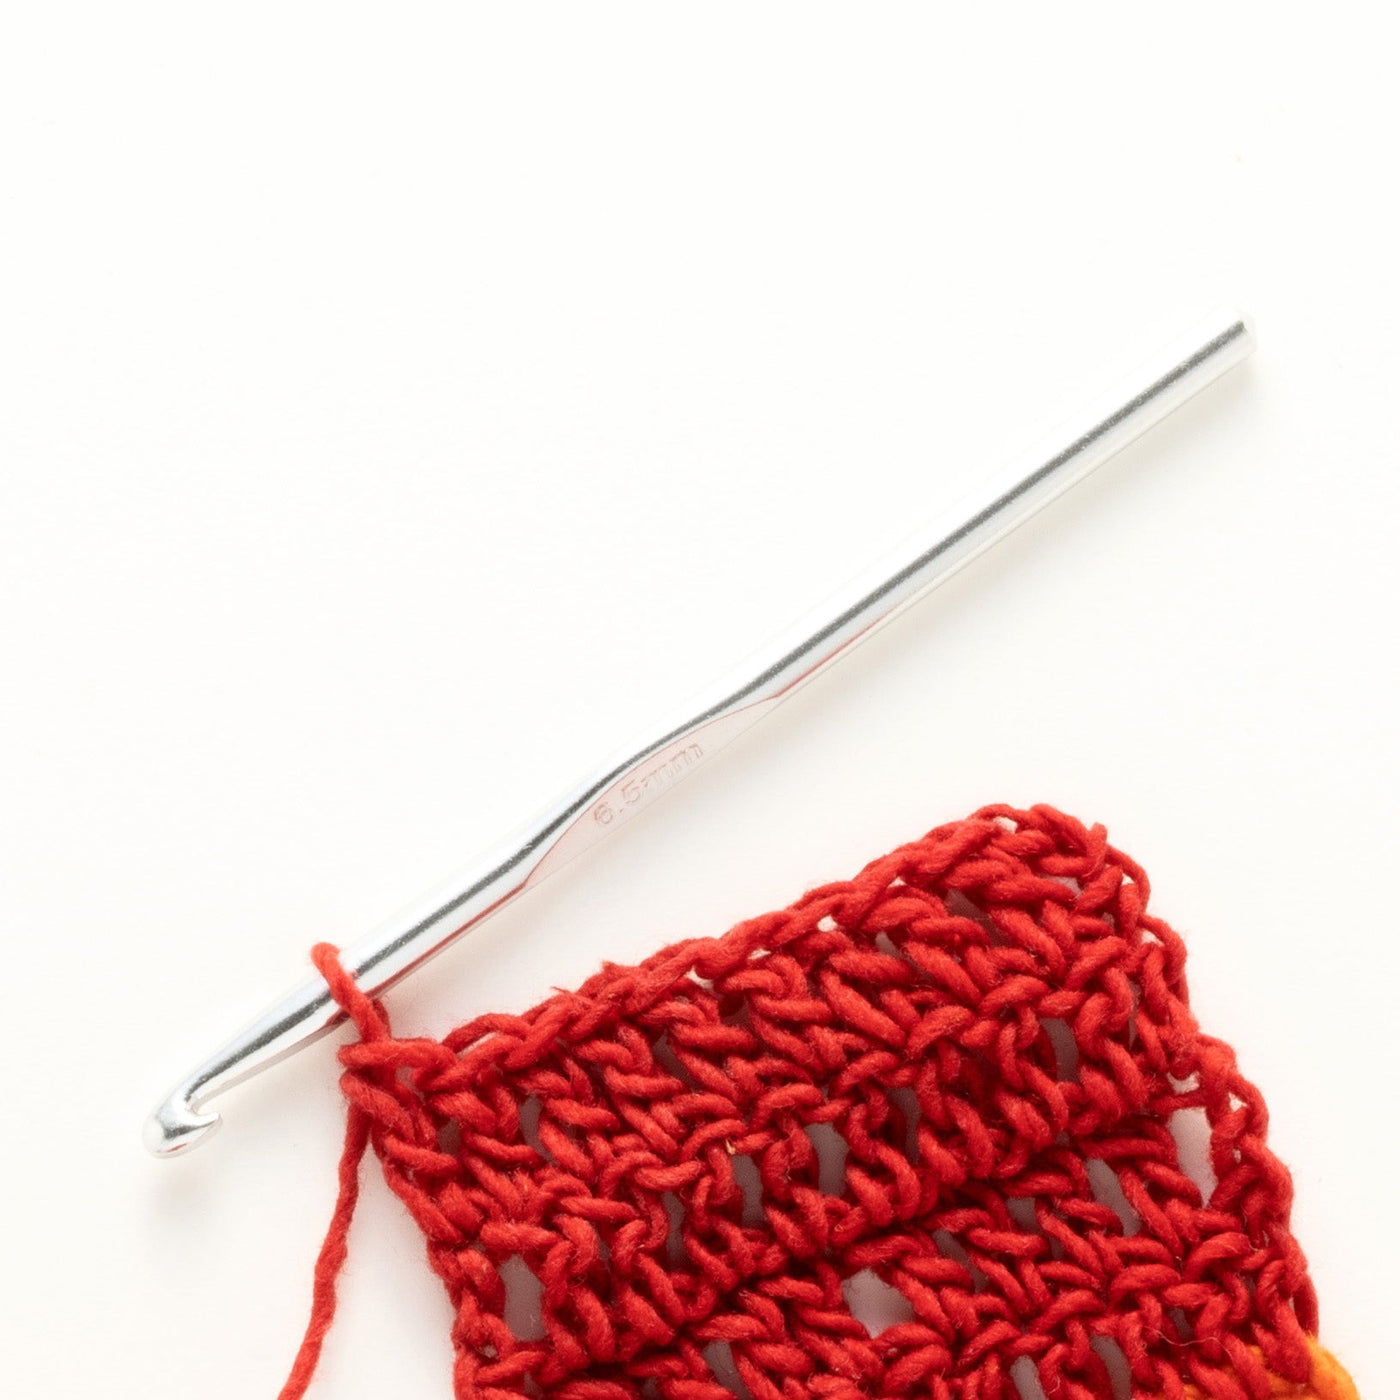 Brand New! 6.5mm Aluminum Crochet Hook Needle Weave Knitting